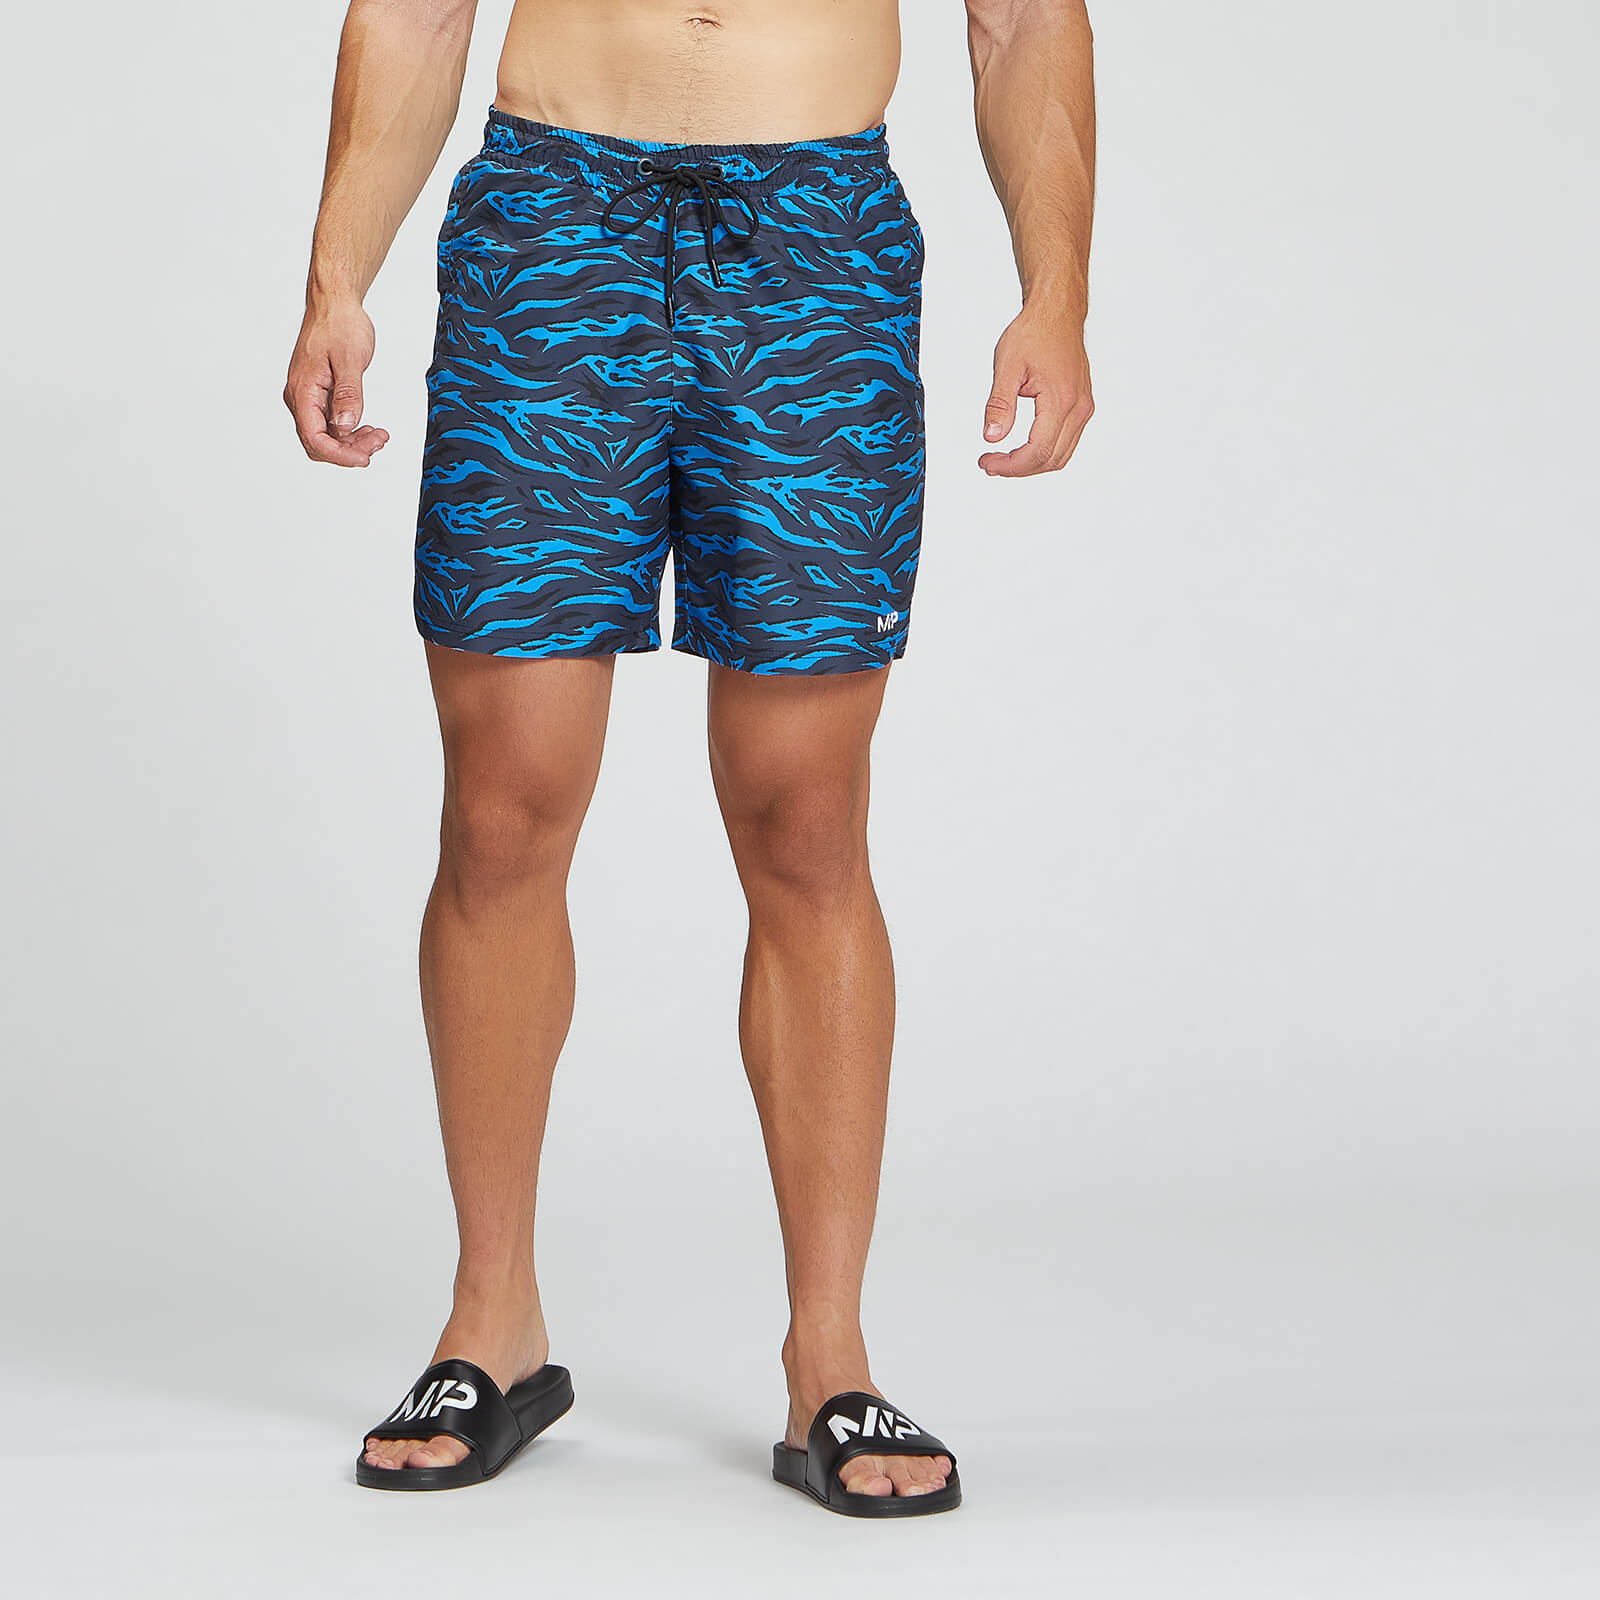 MP muške kratke hlače za plivanje Pacific s otiskom – plava